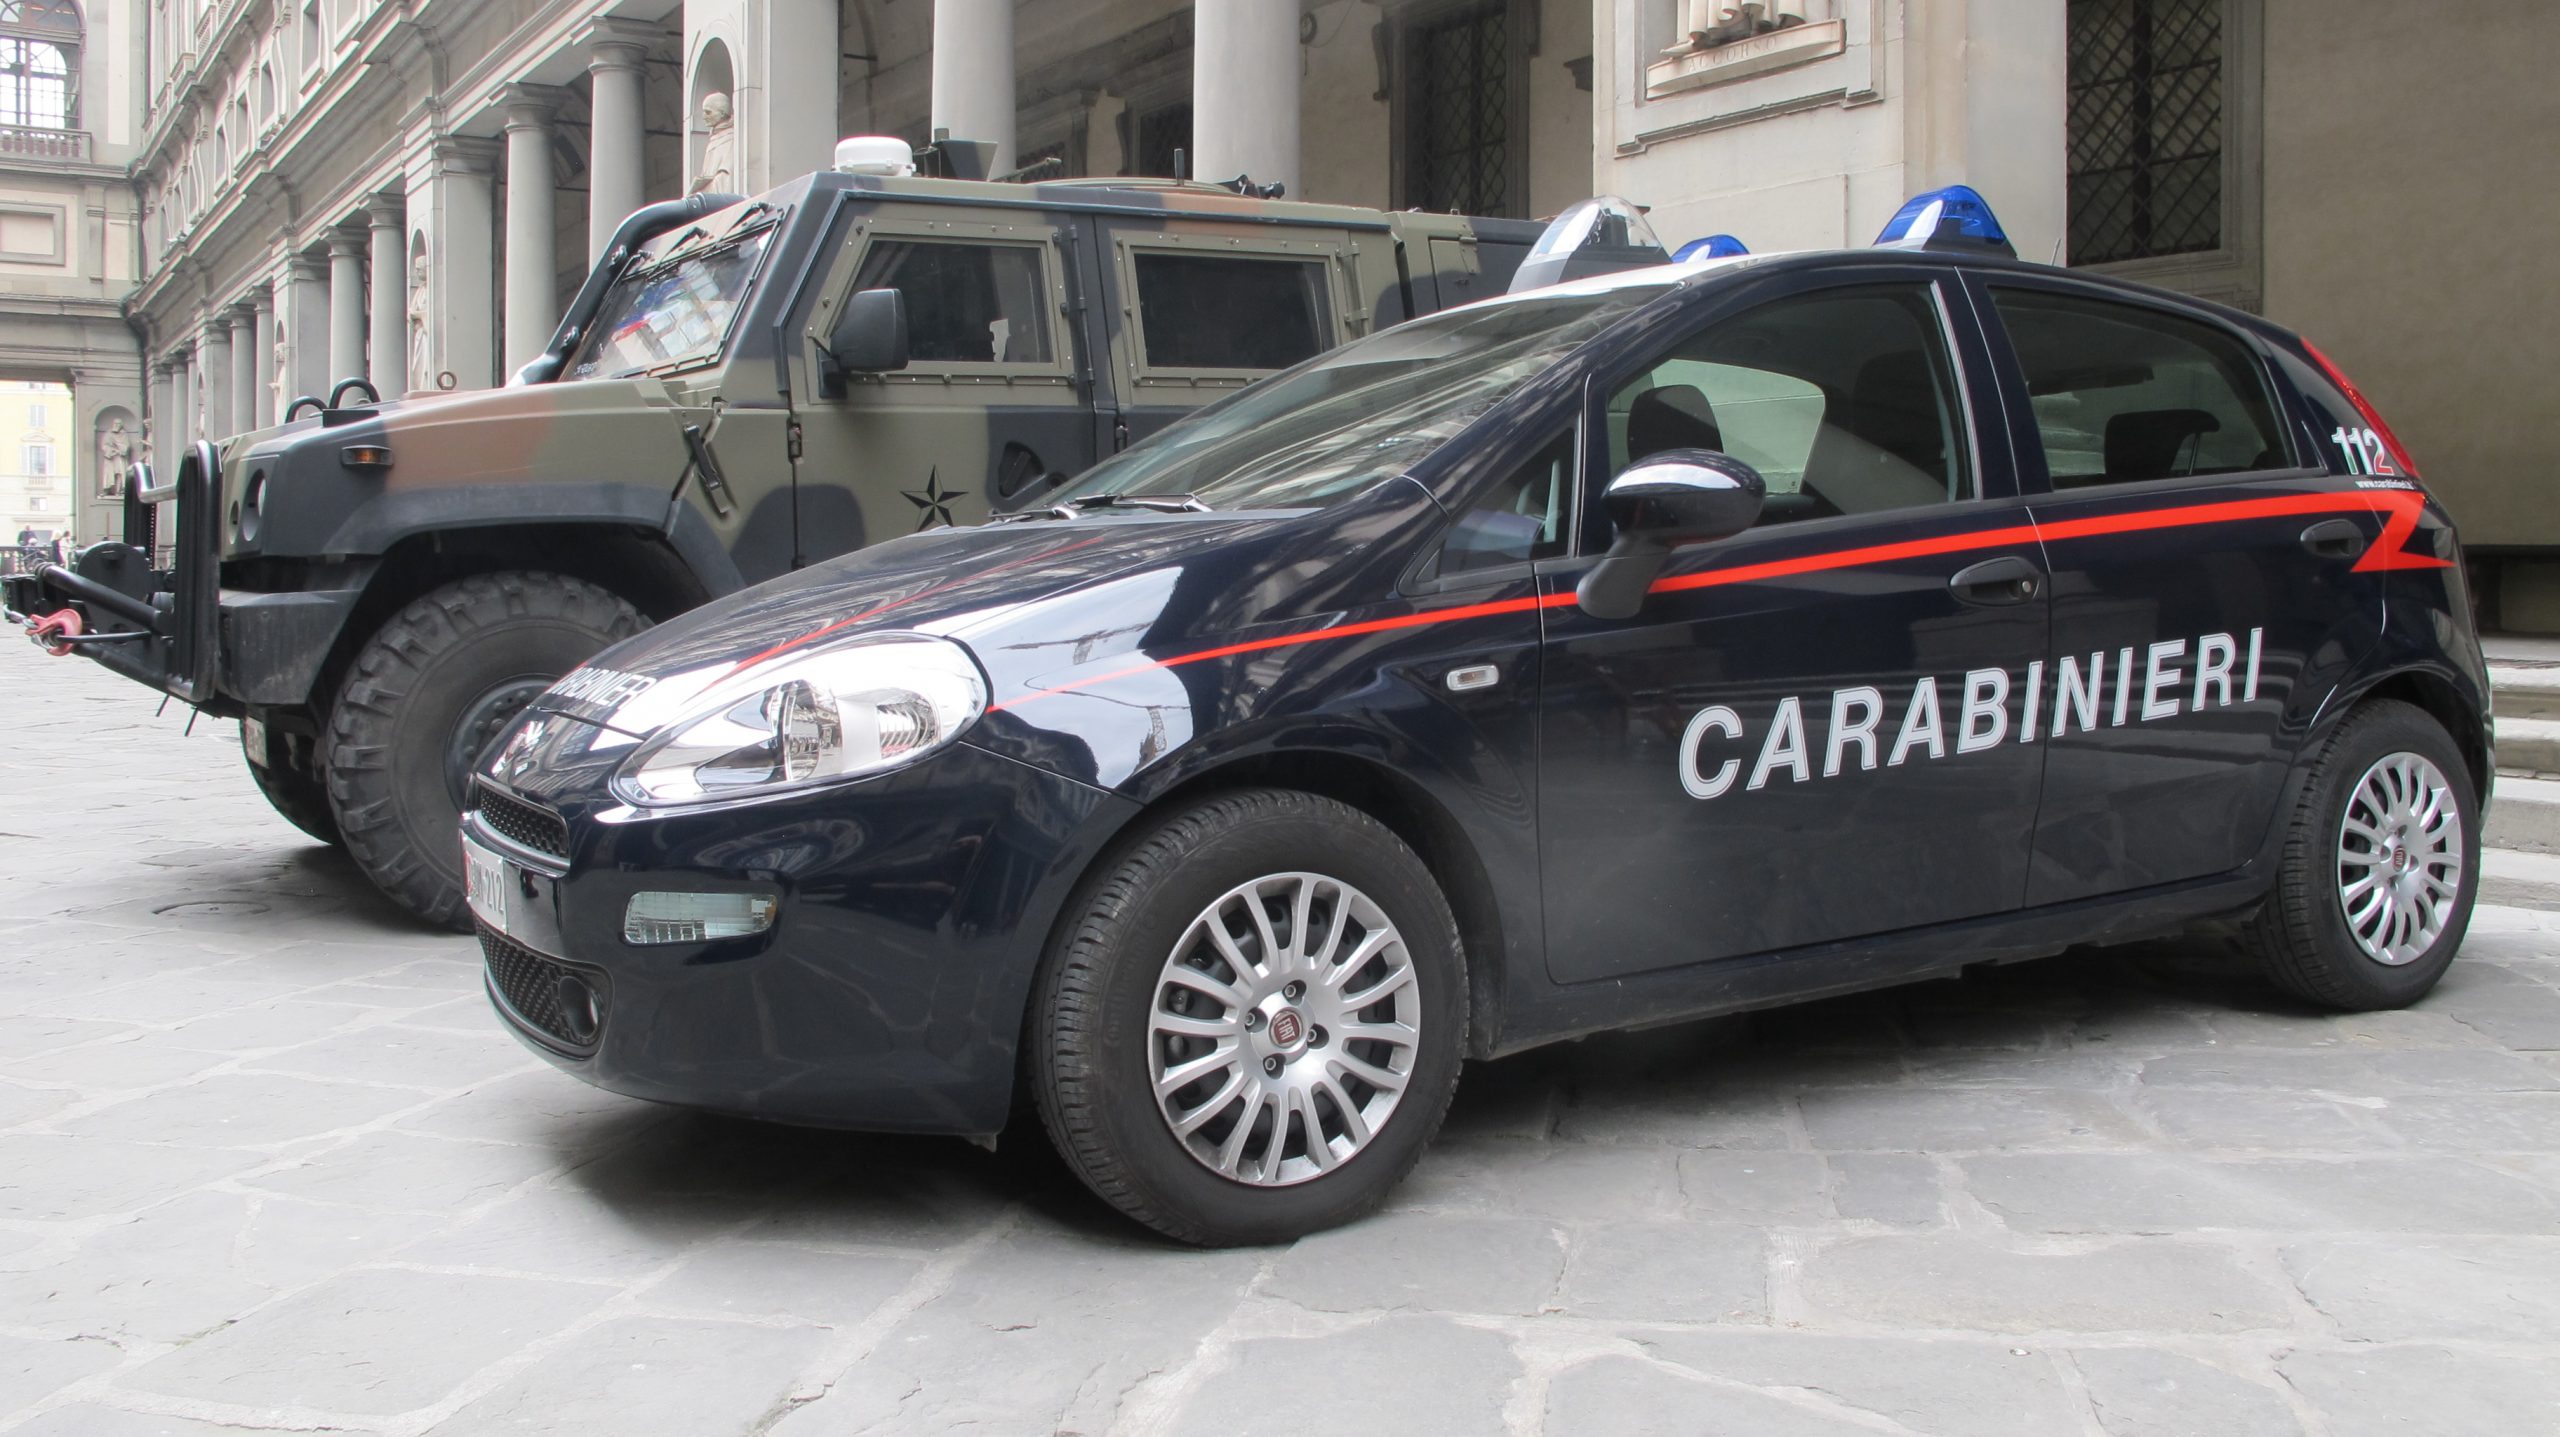 Prato: smantellata banda dello spaccio, 4 gli arresti